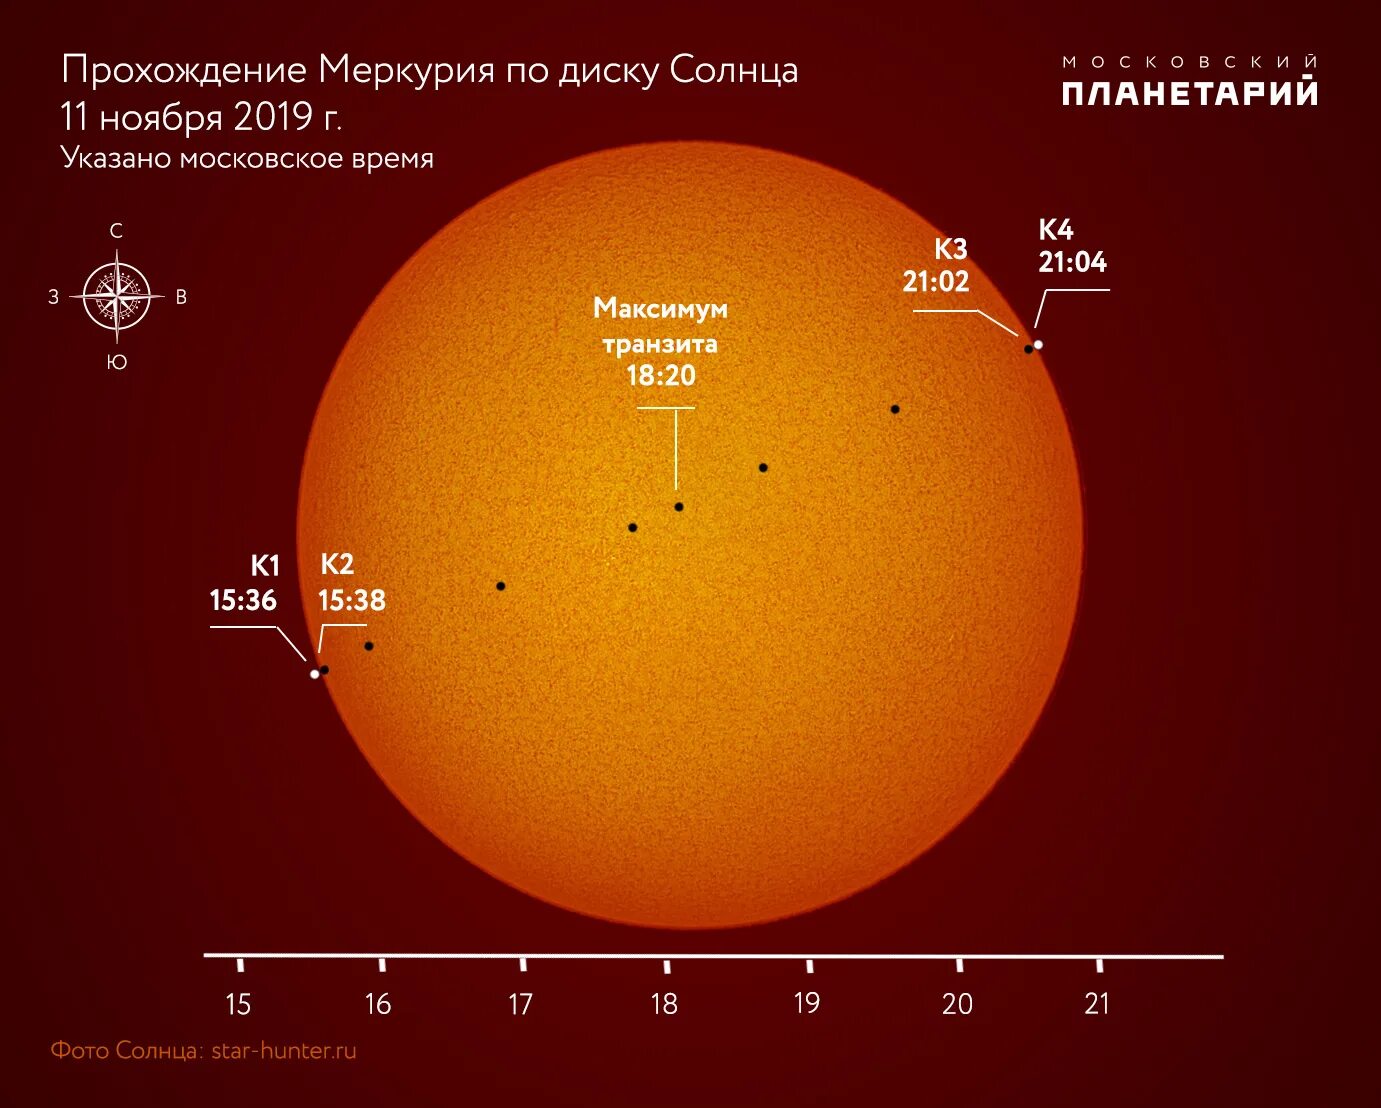 Солнечные сутки венеры. Транзит Меркурия по диску солнца 11 ноября 2019 года. Прохождение Меркурия по диску солнца. Наблюдения прохождения планет по диску солнца. Меркурий по диску солнца.